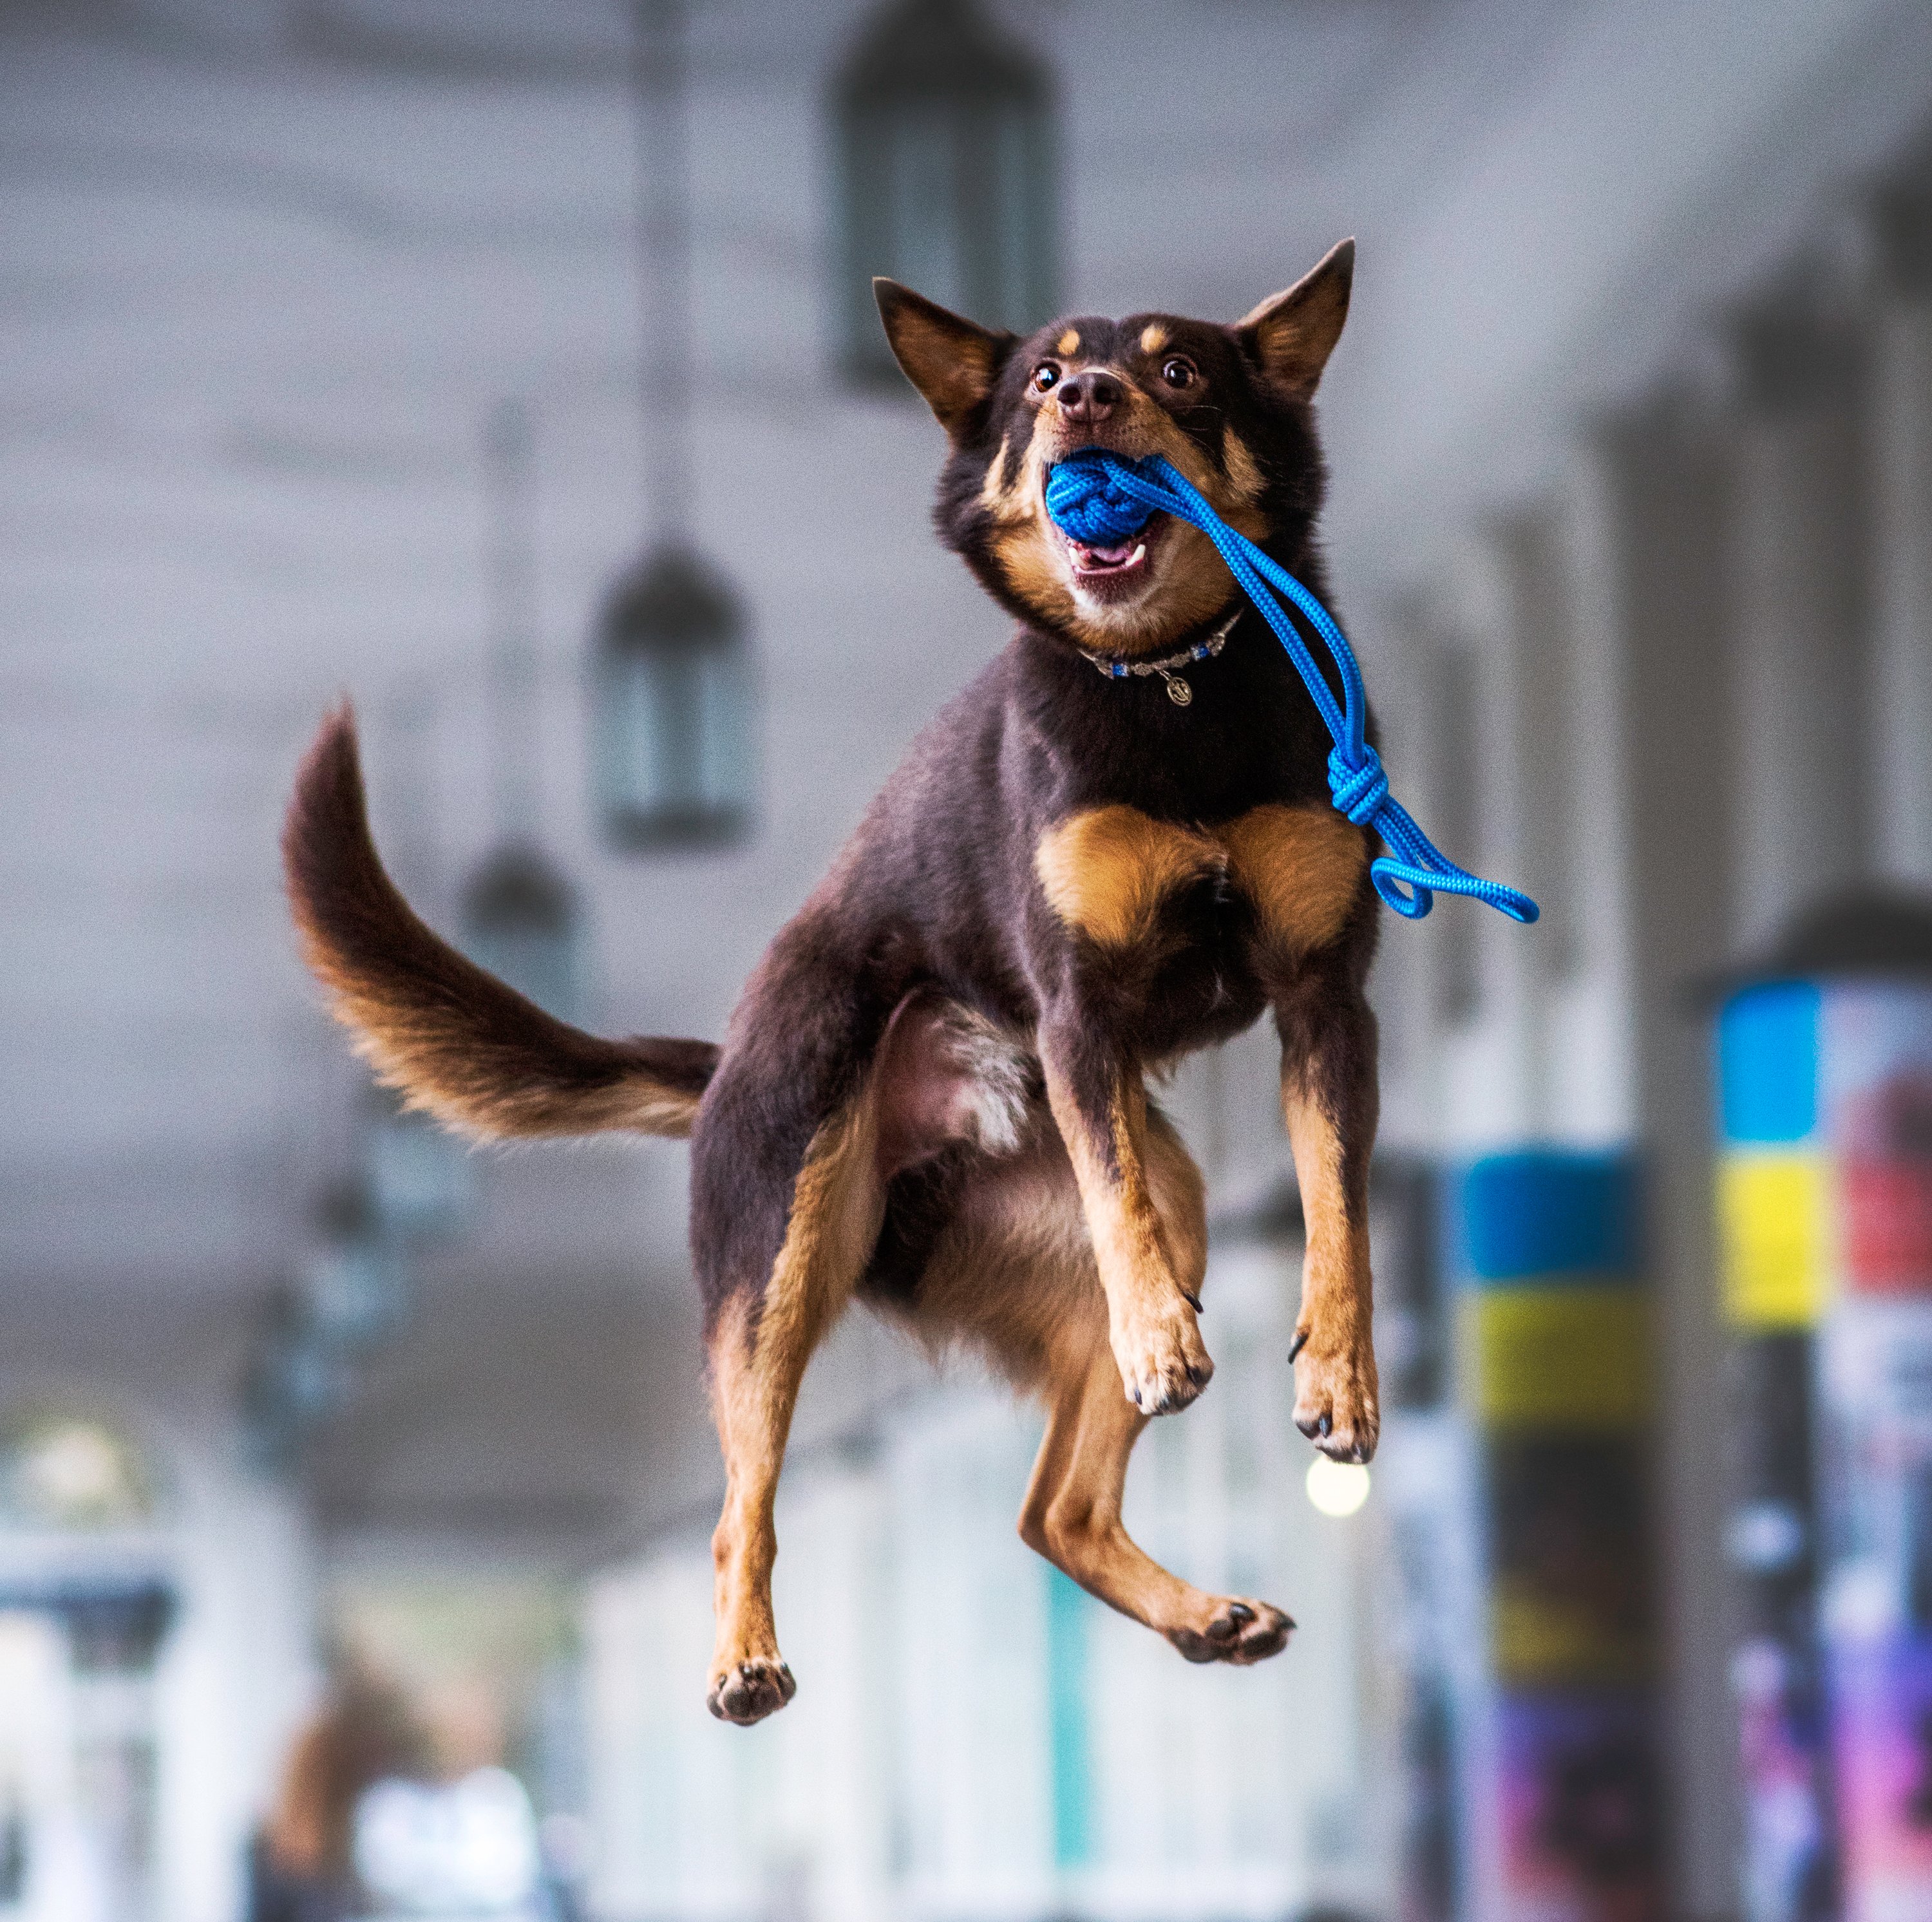 Hund huepft hoch mit blauem Tauspielzeug im Maul 